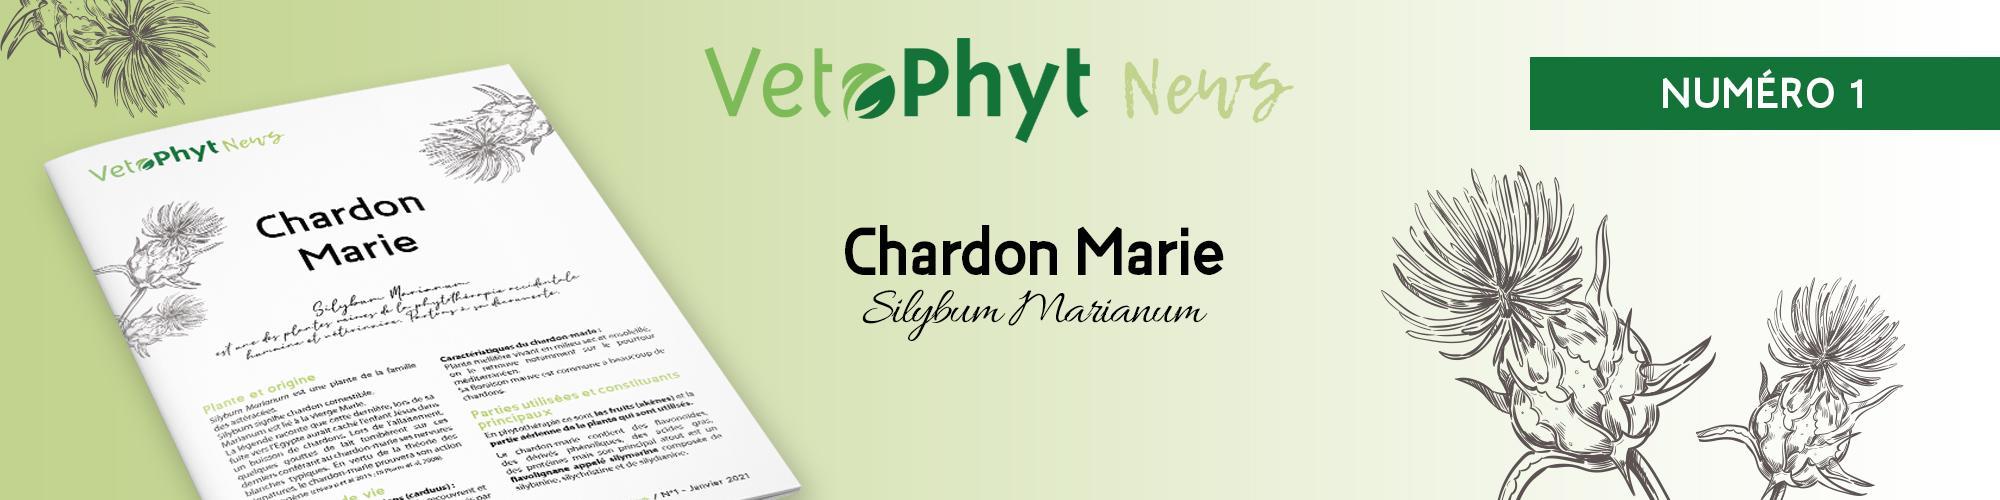 VetoPhyt News Chardon-marie